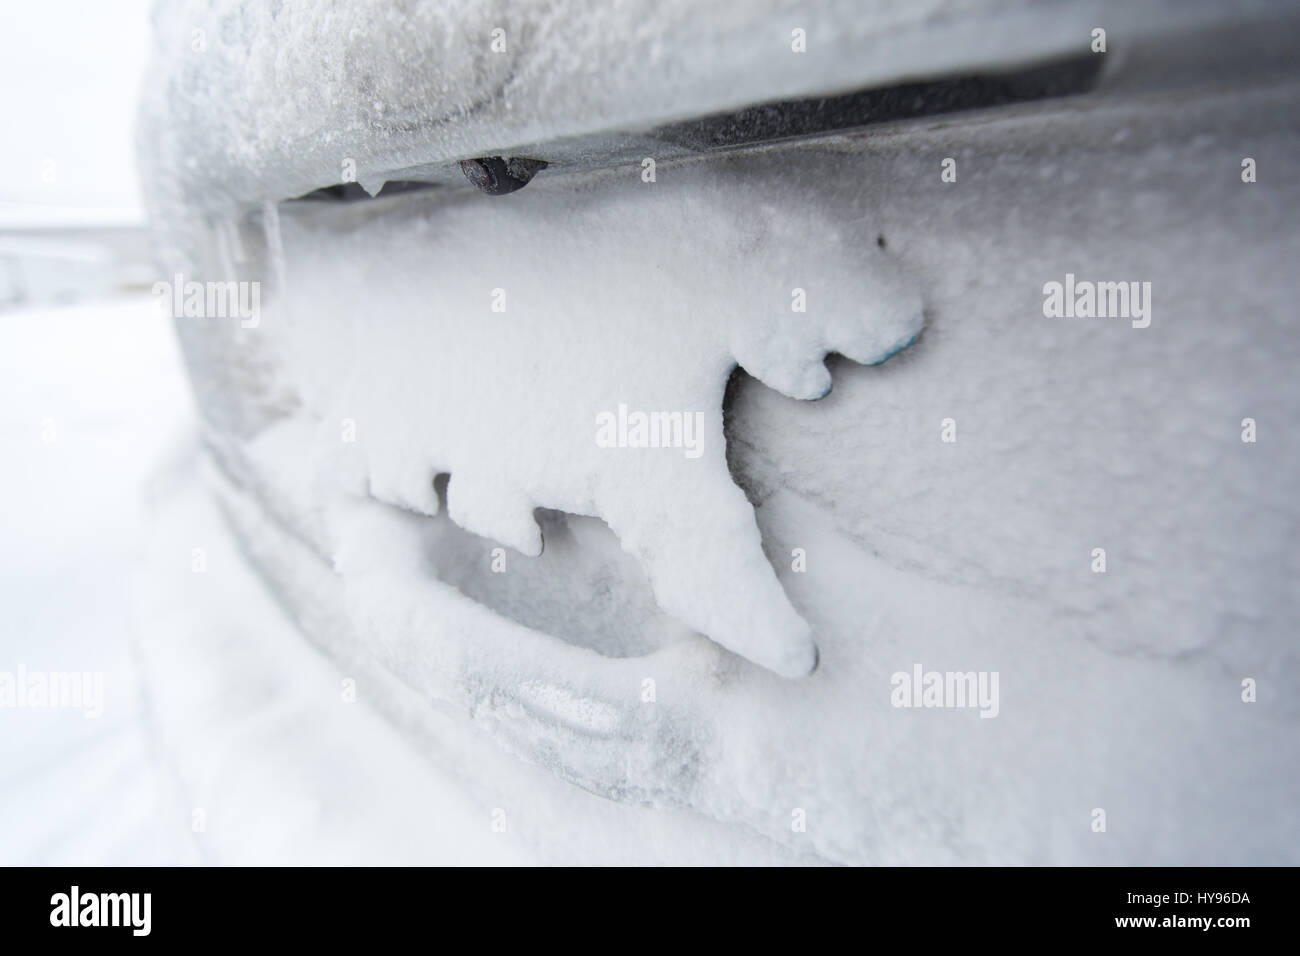 Nordwest Territories, Kanada NWT-Kennzeichenschild in Form eines Eisbären am Fahrzeug montiert und mit weißem Schnee bedeckt; Winterfahrten Stockfoto